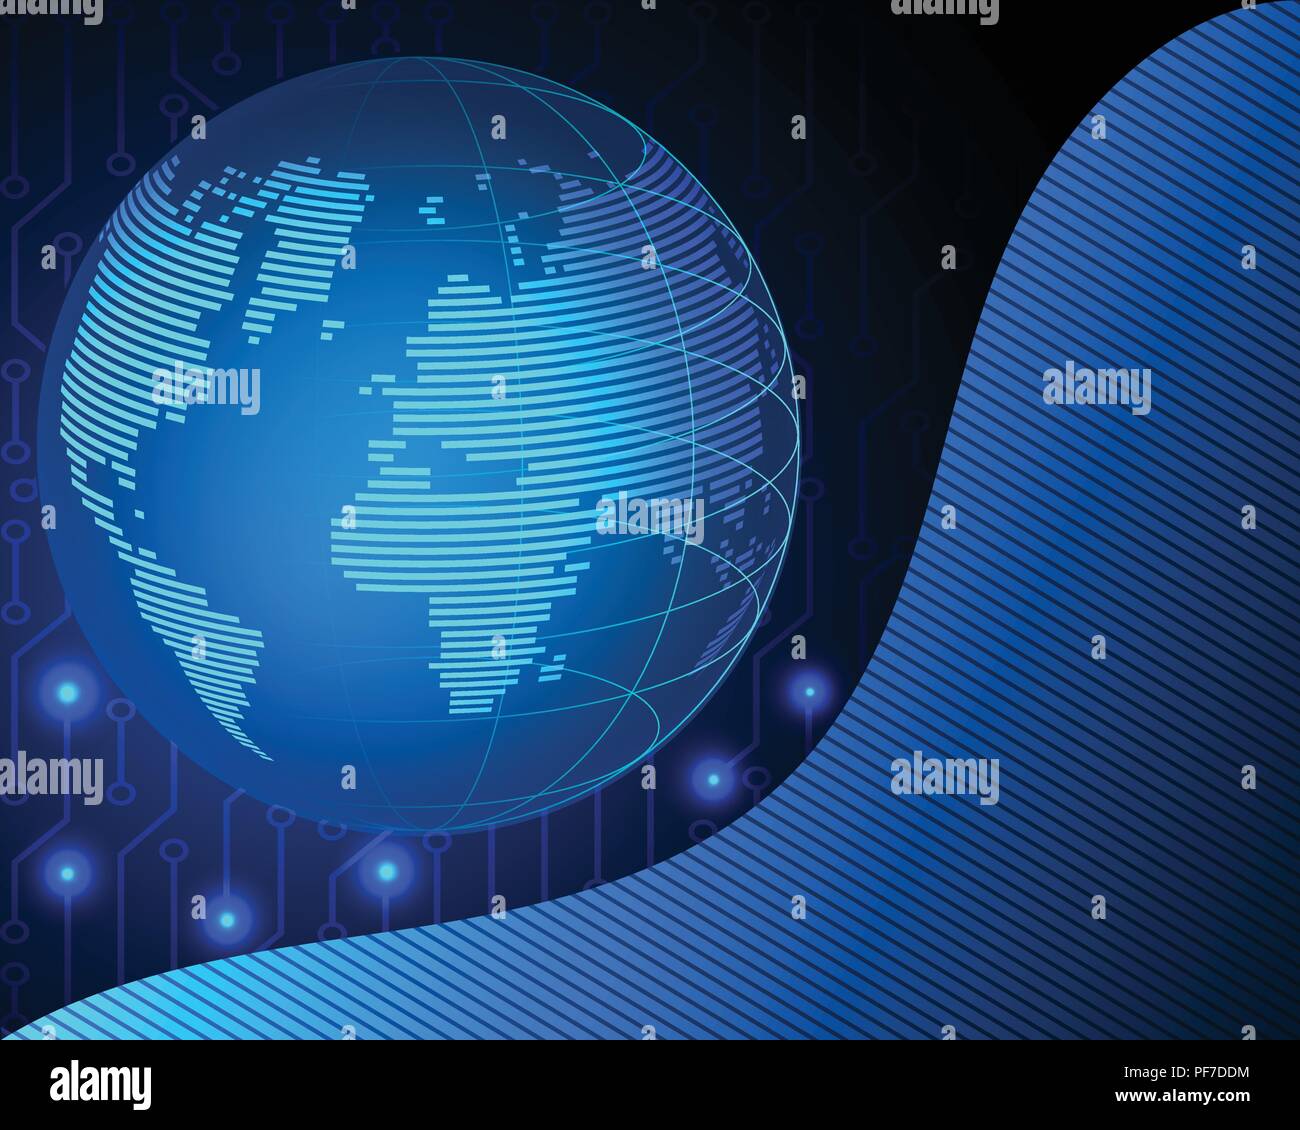 Mondo Wireframe rete internet globale con grandi data information technology di collegamento modello di business i concetti. Illustrazione Vettoriale eps10 Illustrazione Vettoriale